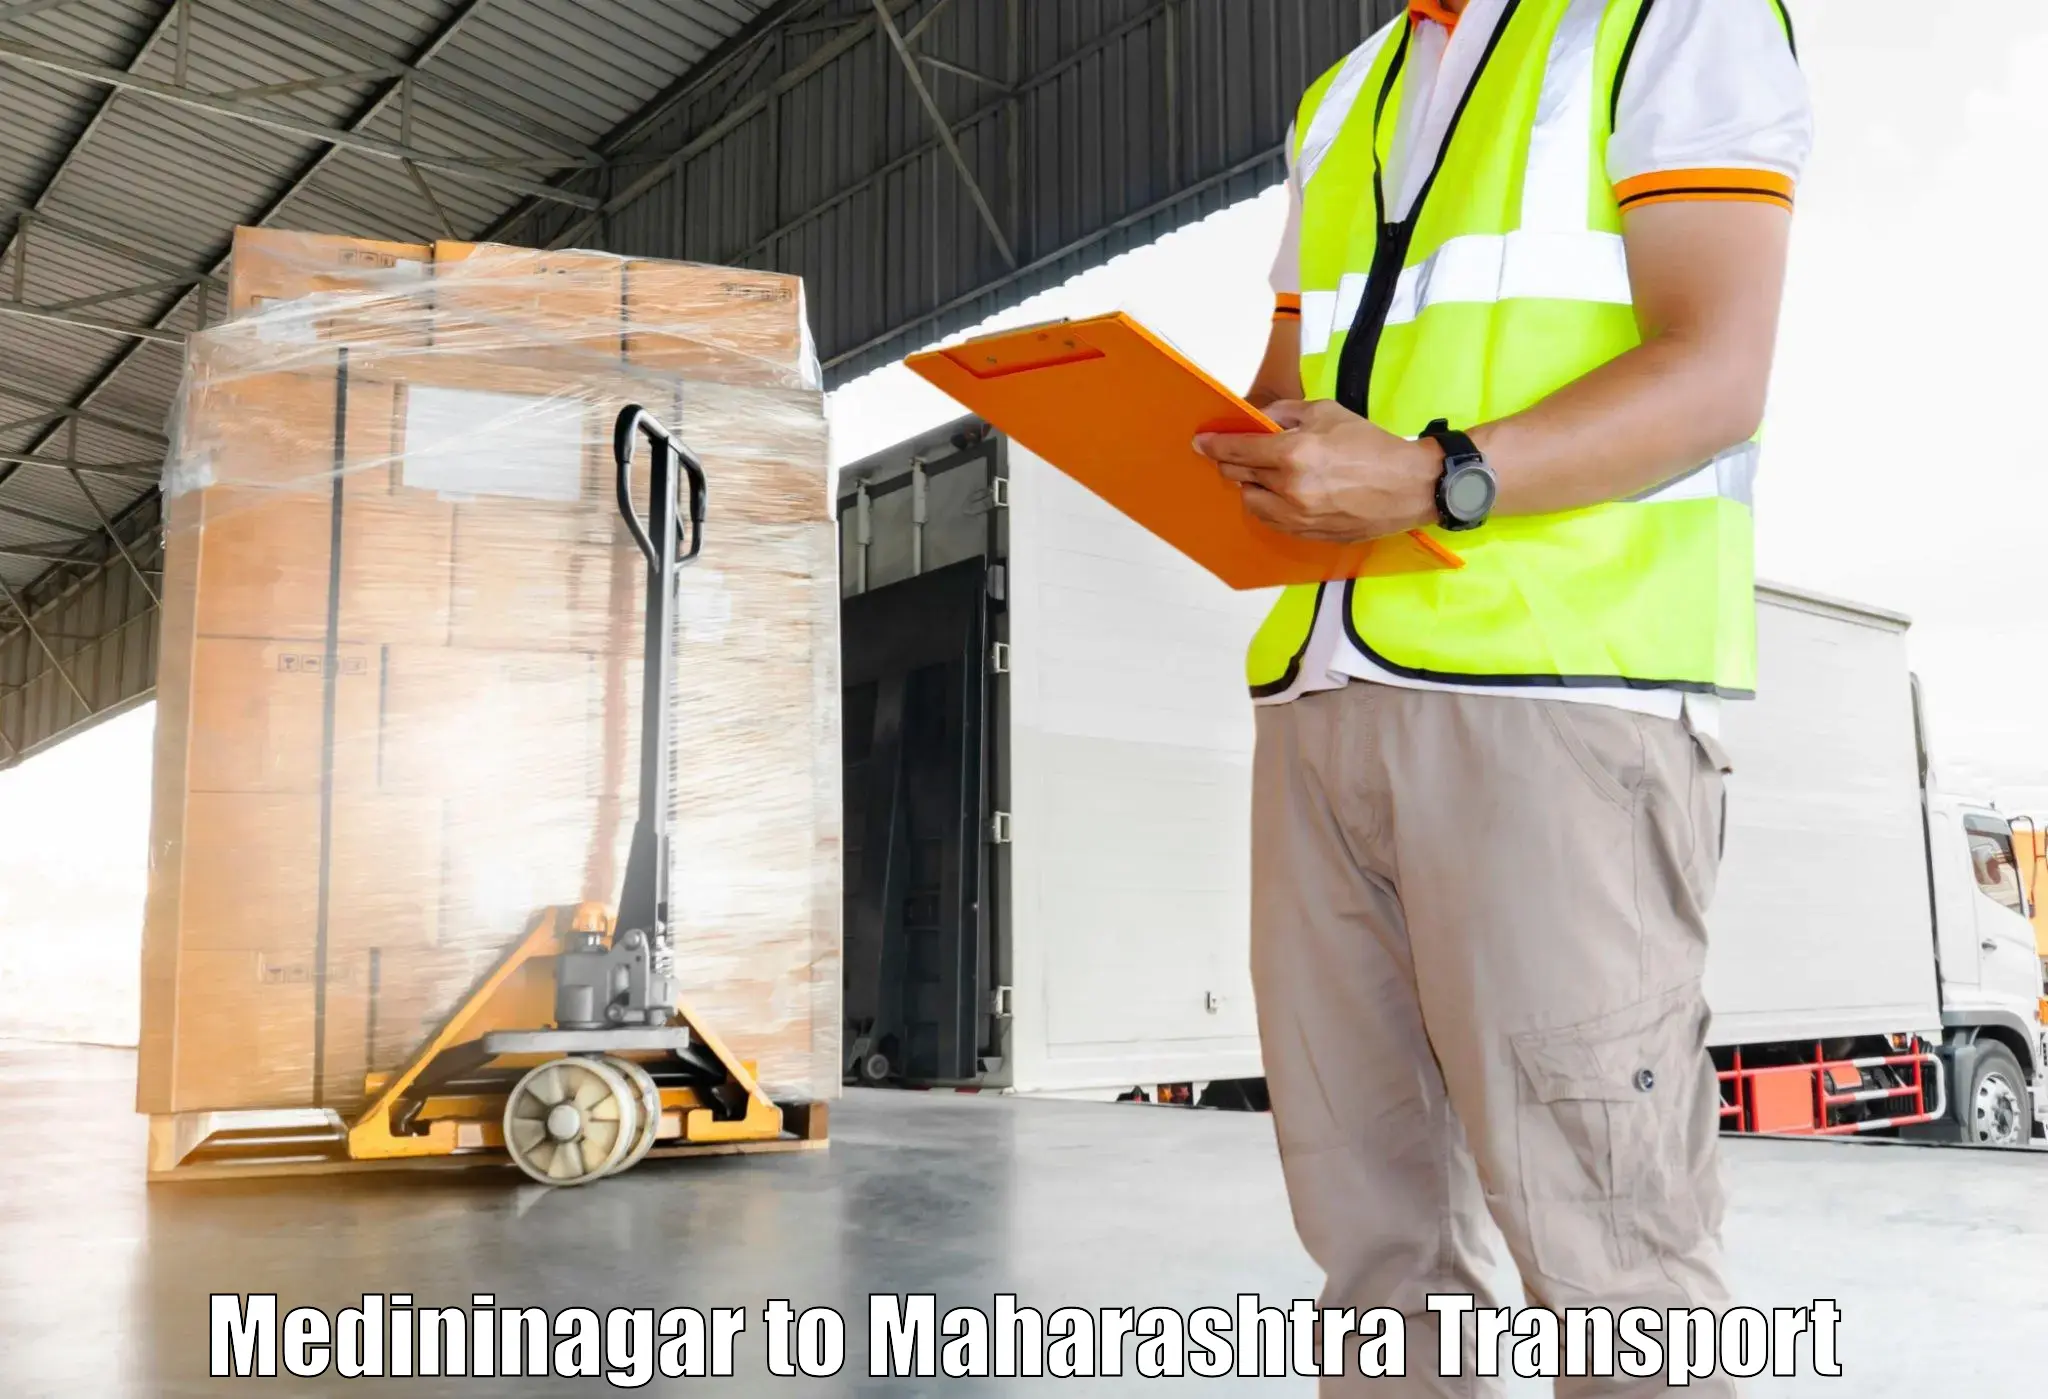 Air cargo transport services Medininagar to Hingoli